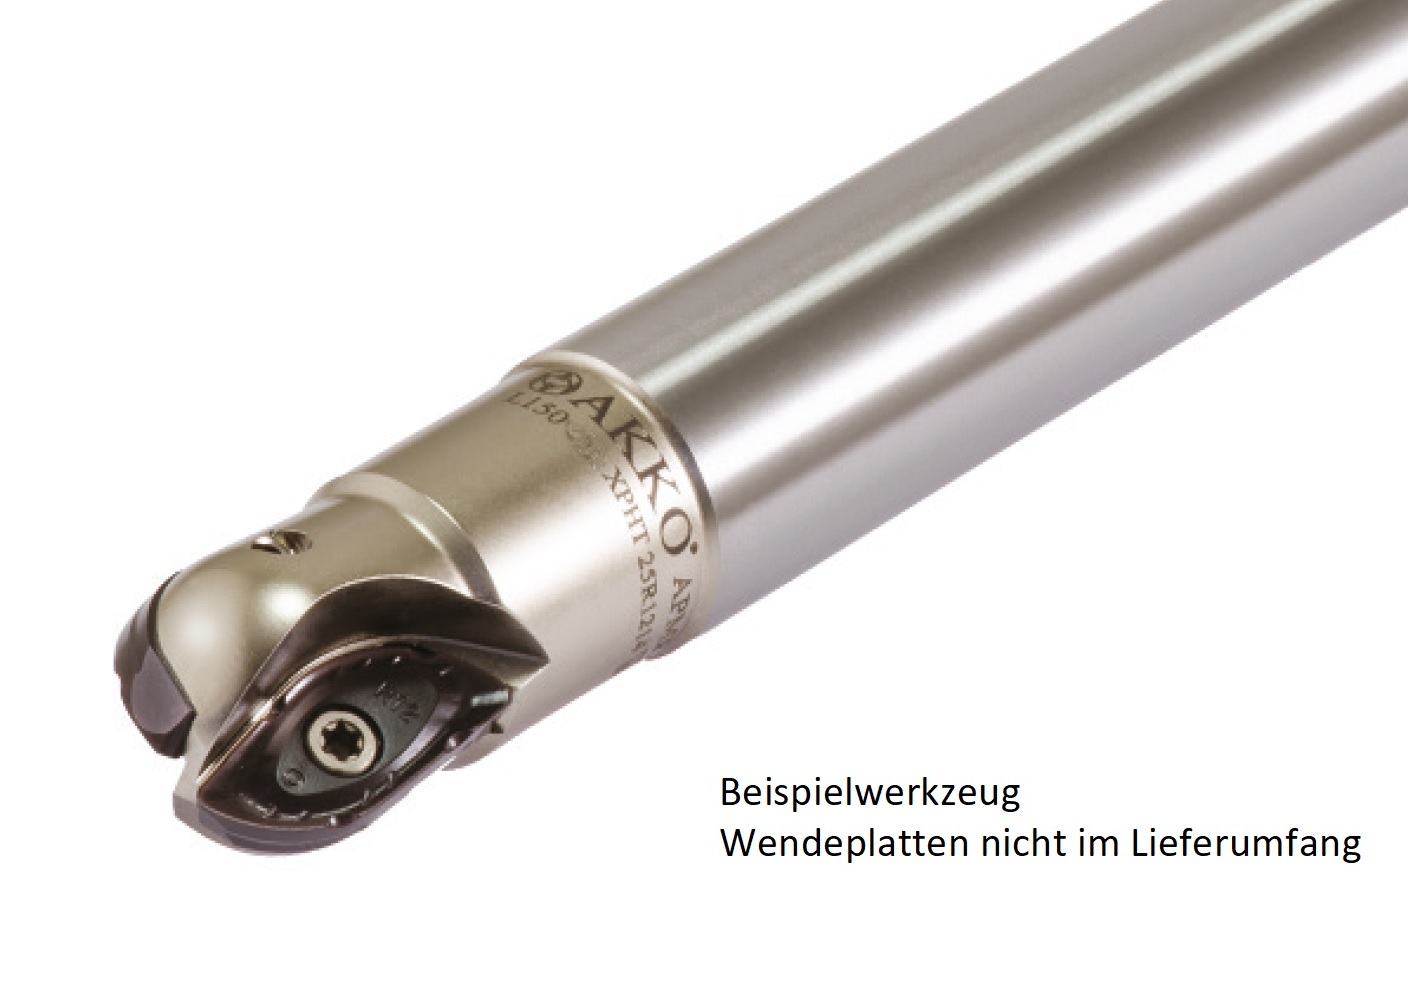 AKKO-Kugelkopierfräser für Wendeplatten, ø 20 mm, kompatibel mit ZCC XPHT 20R10T3
Schaft-ø 20, ohne Innenkühlung